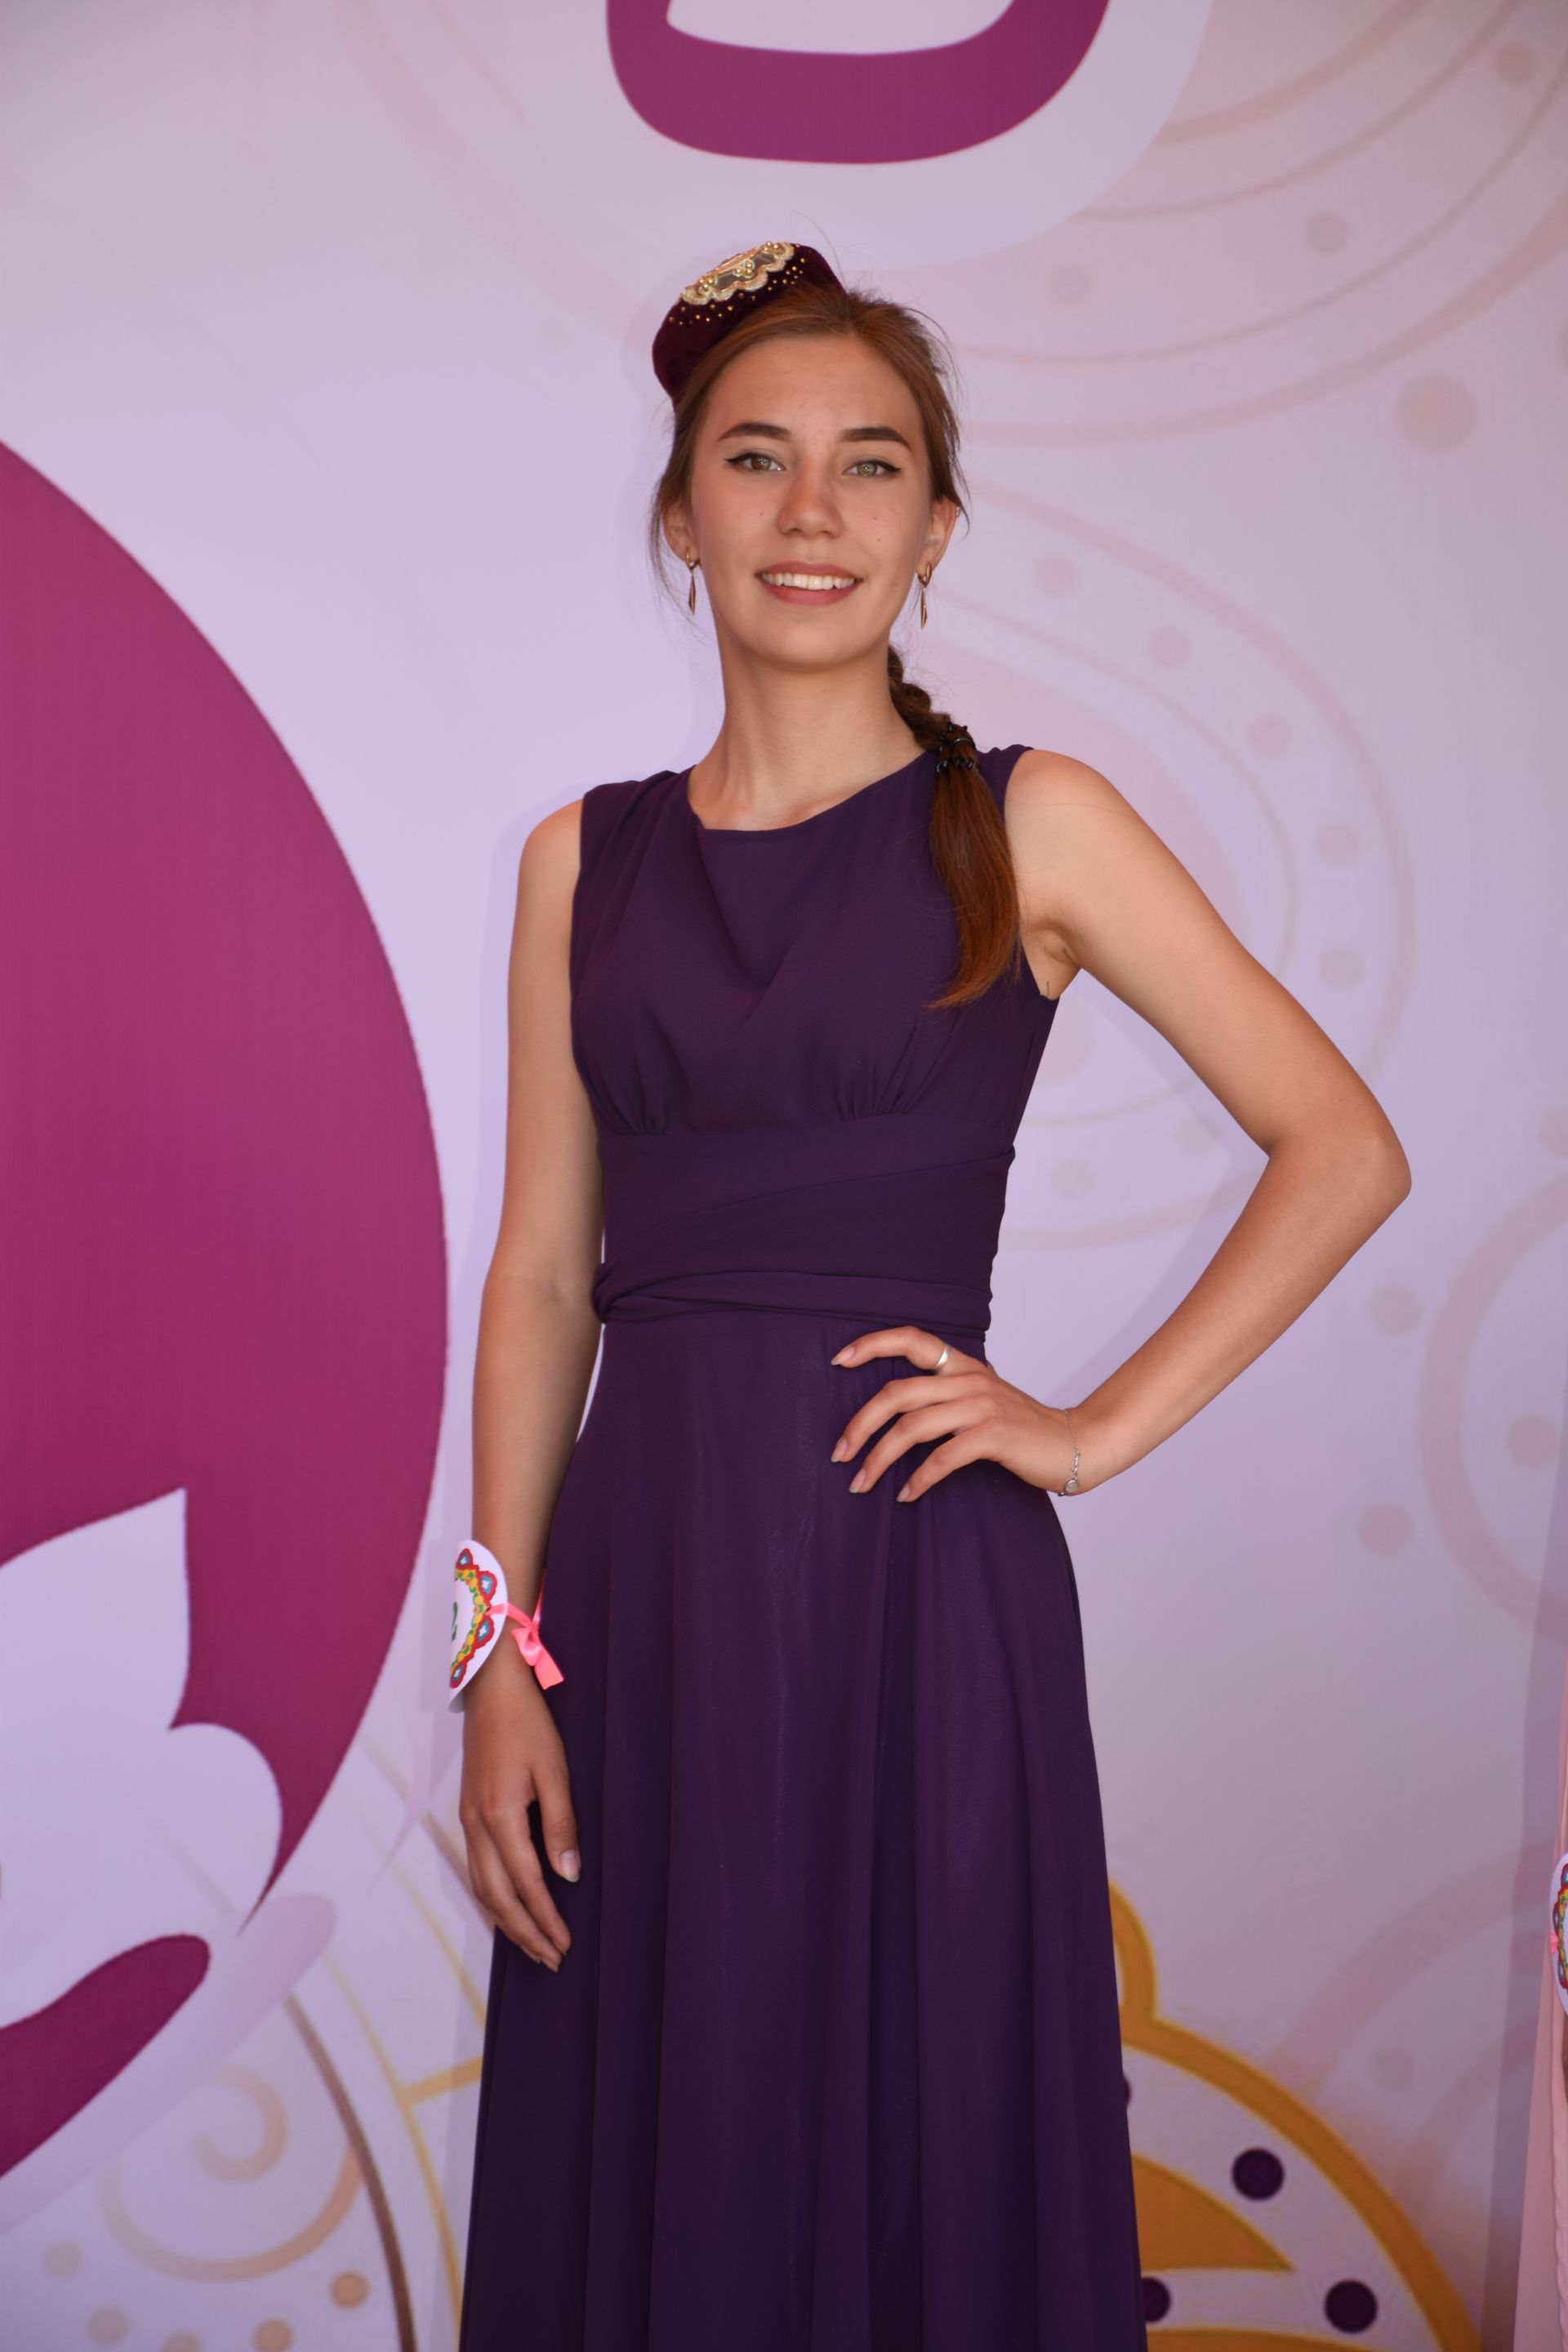 Айгуль Бильданова стала победительницей конкурса "Сабантуй сылуы - 2019" в Нурлате